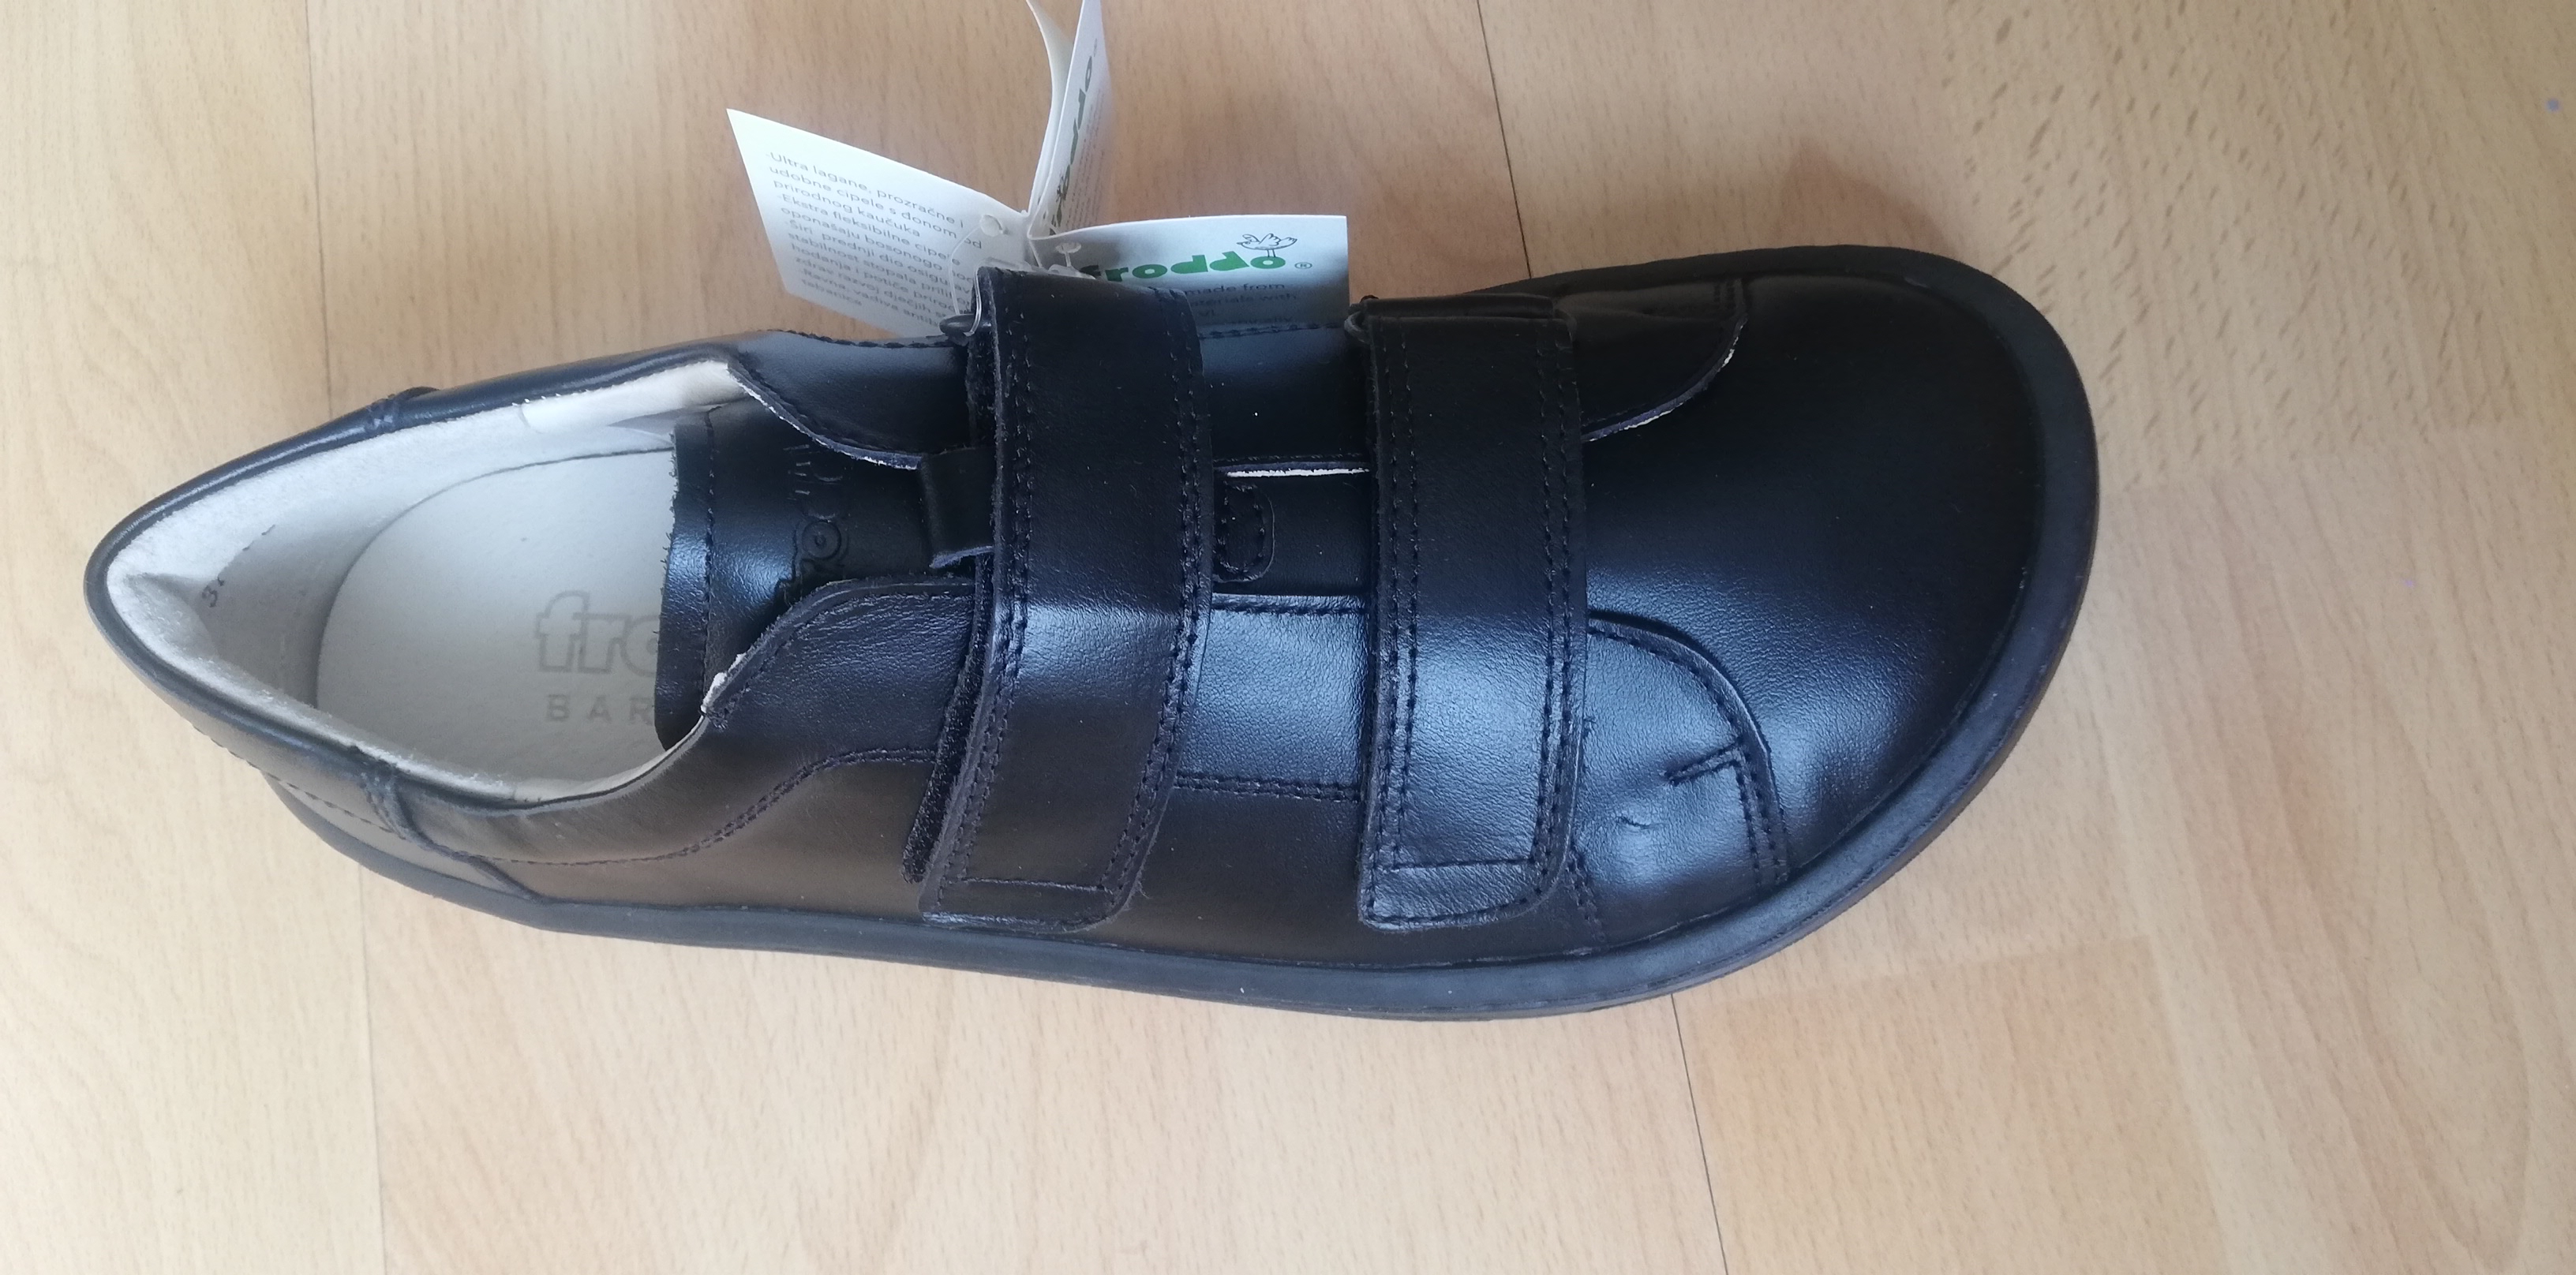 Froddo barefoot topánky - čierne -v.37-24,3cm